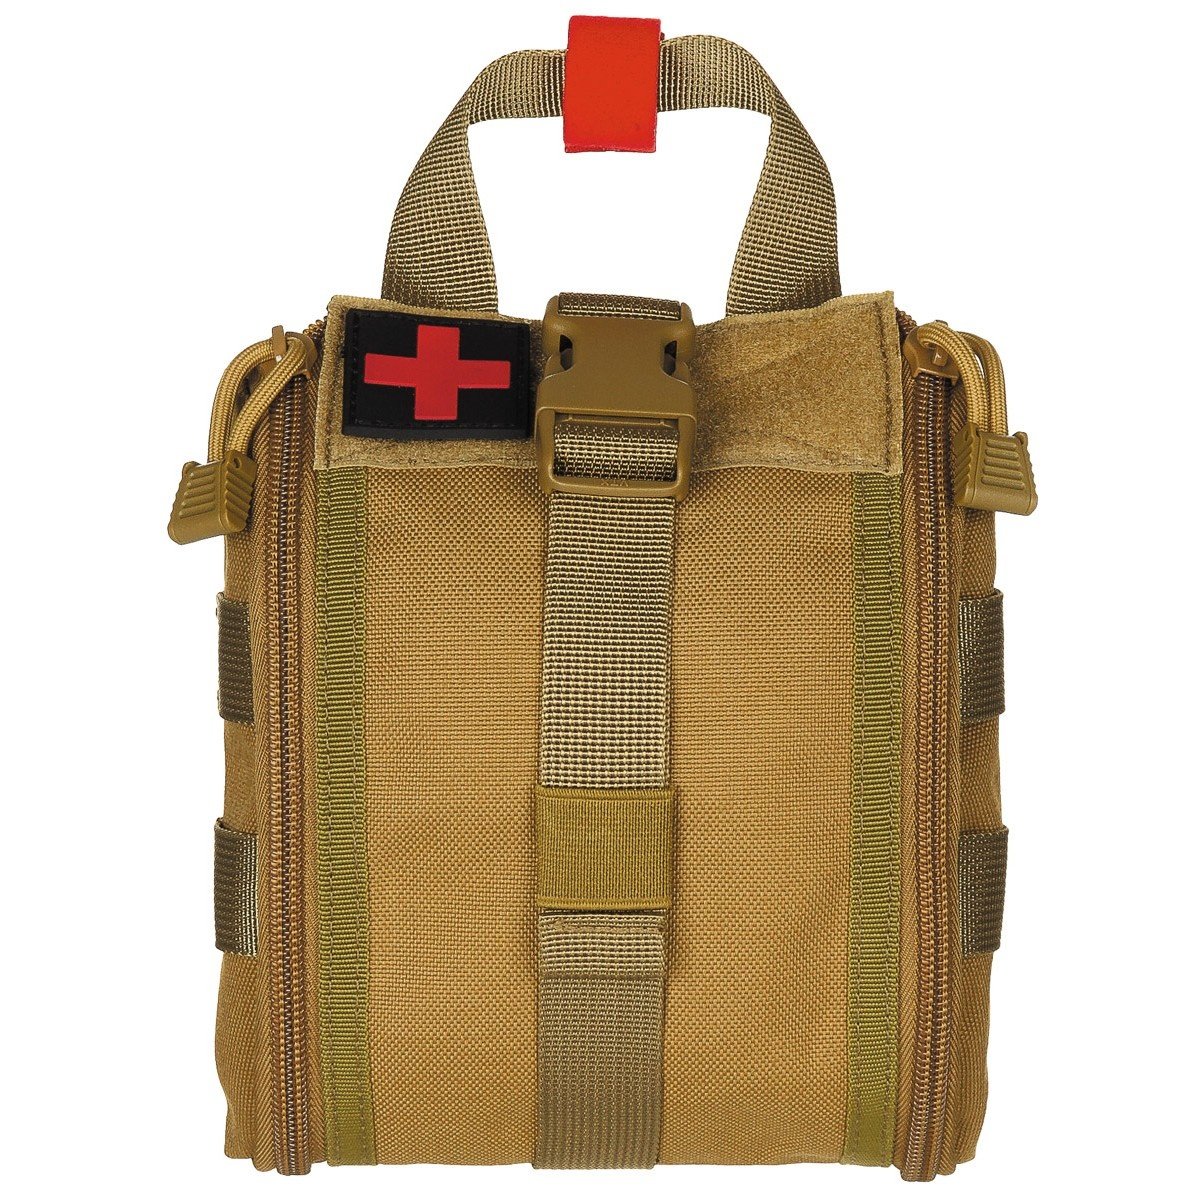 MFH First aid bag MOLLE small - TAN